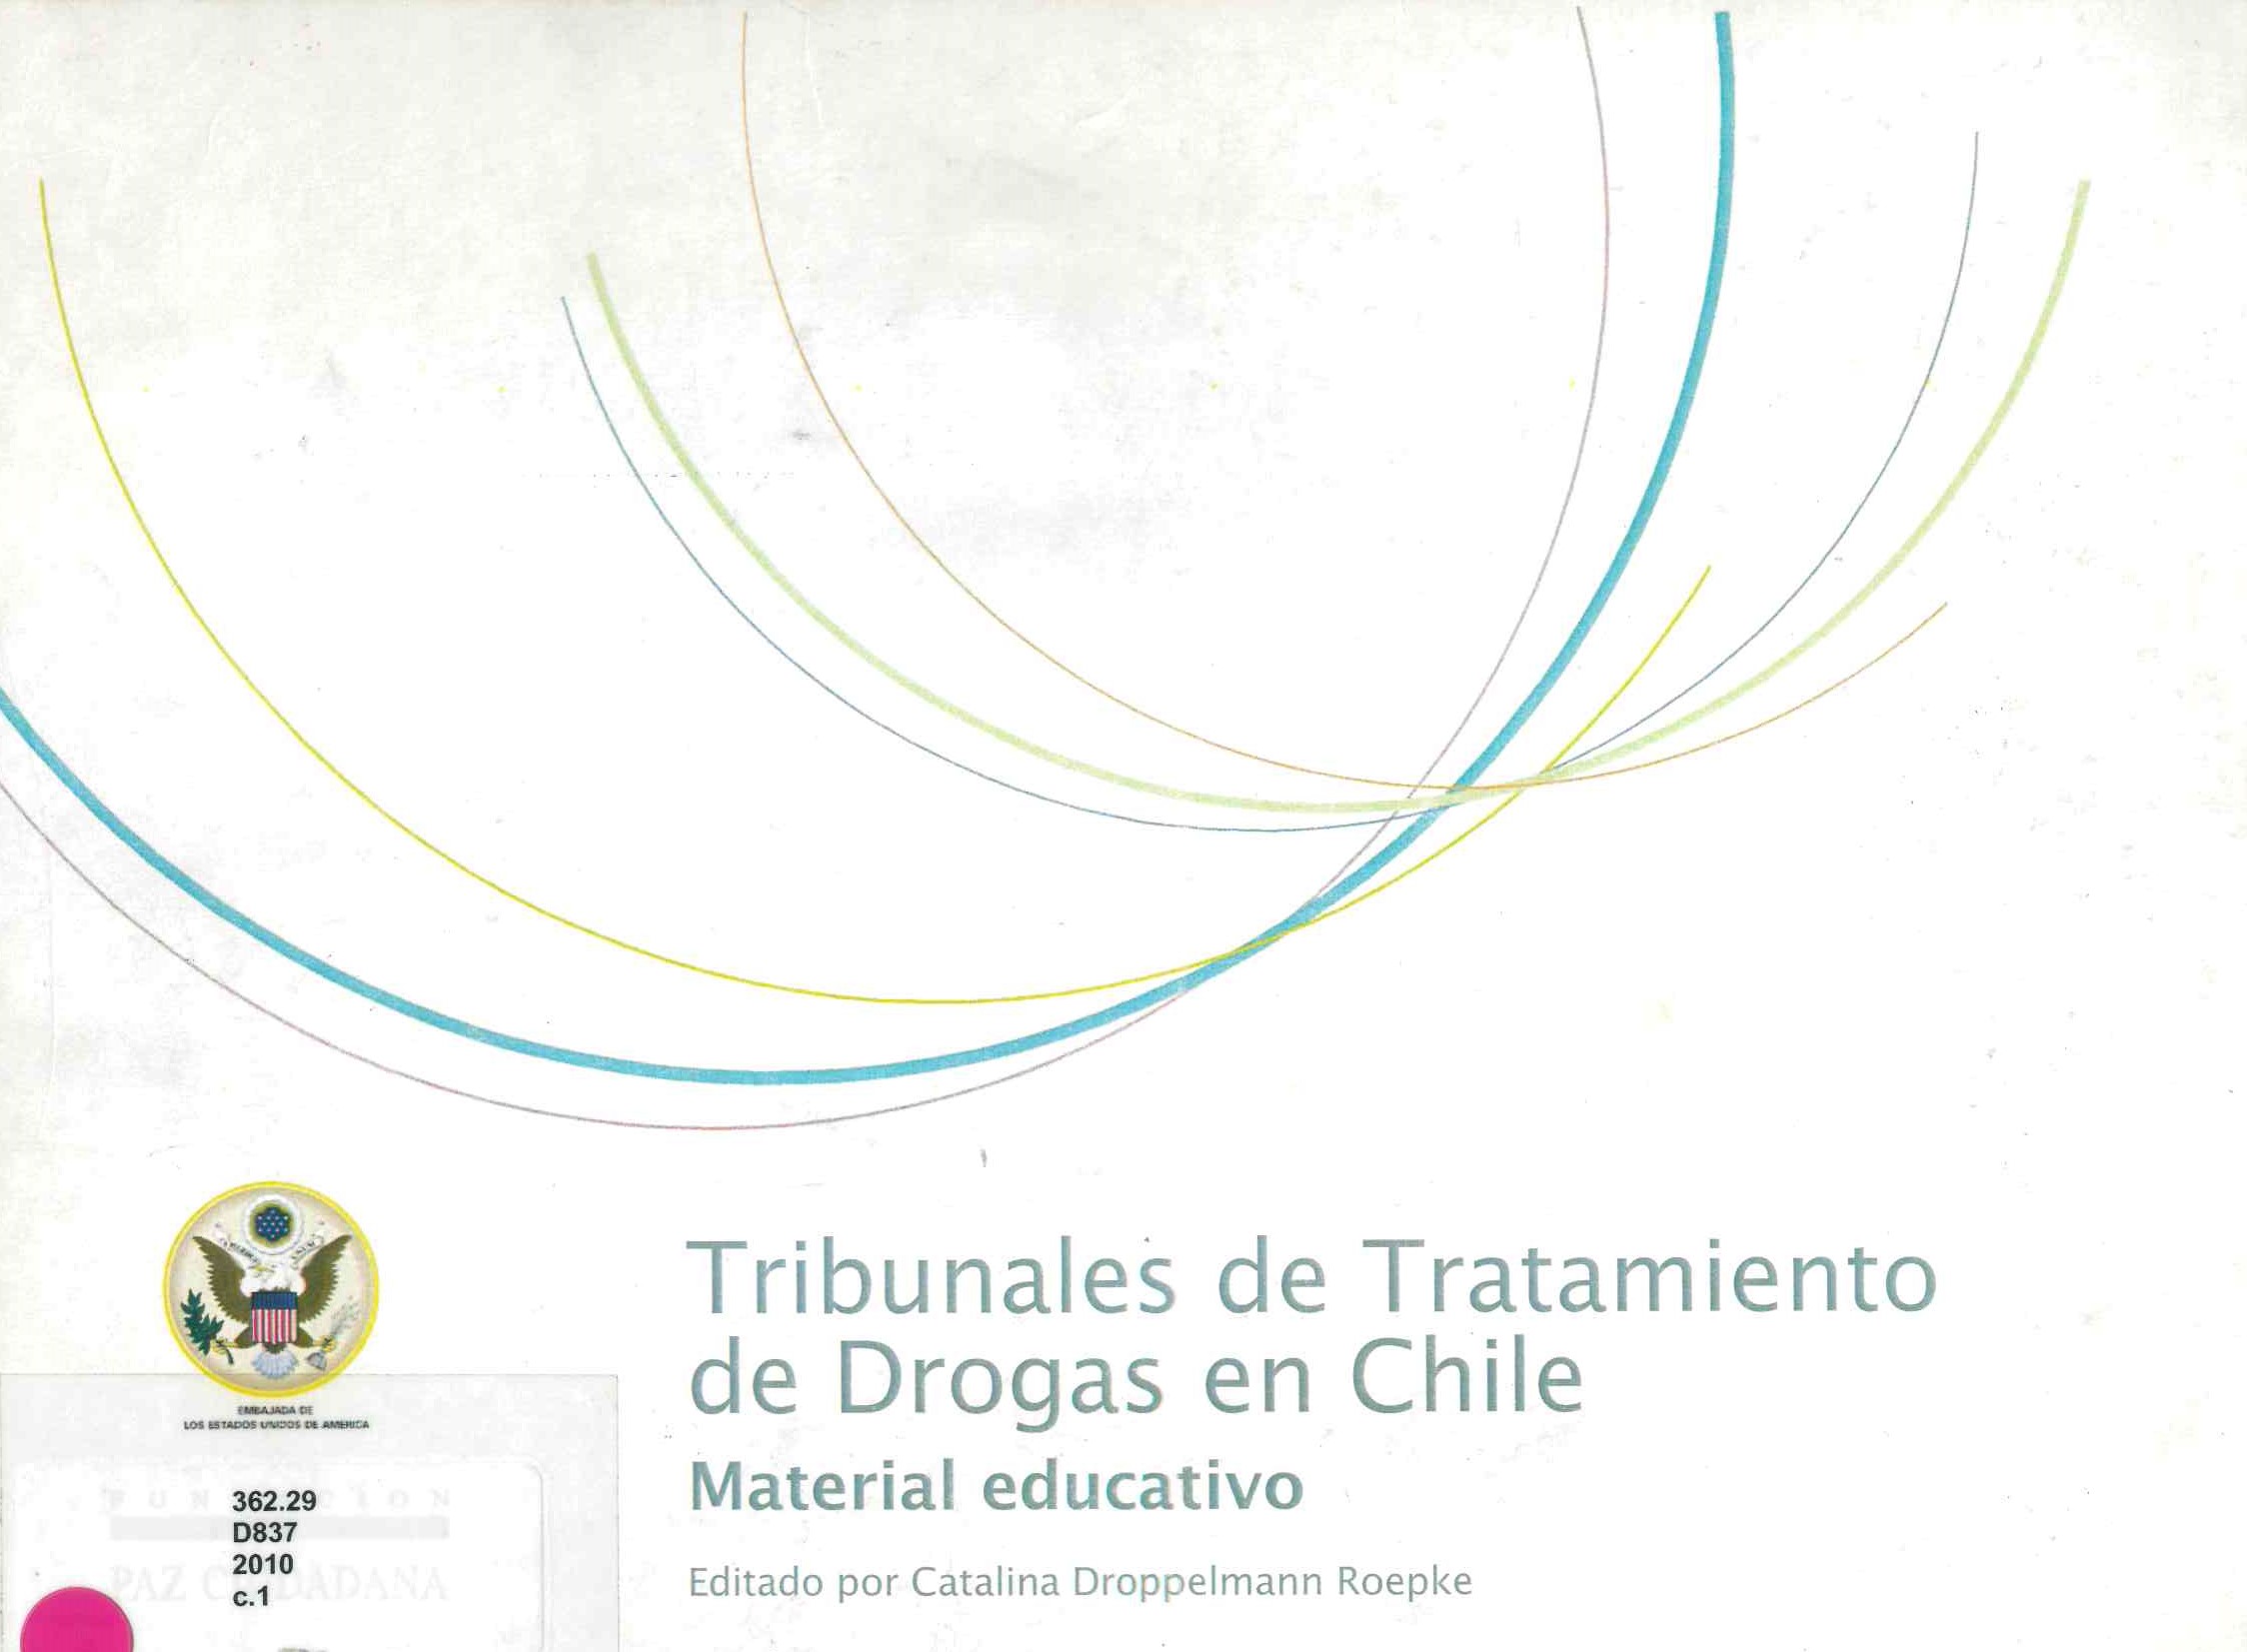 Tribunales de tratamiento de drogas en Chile: material educativo en Chile